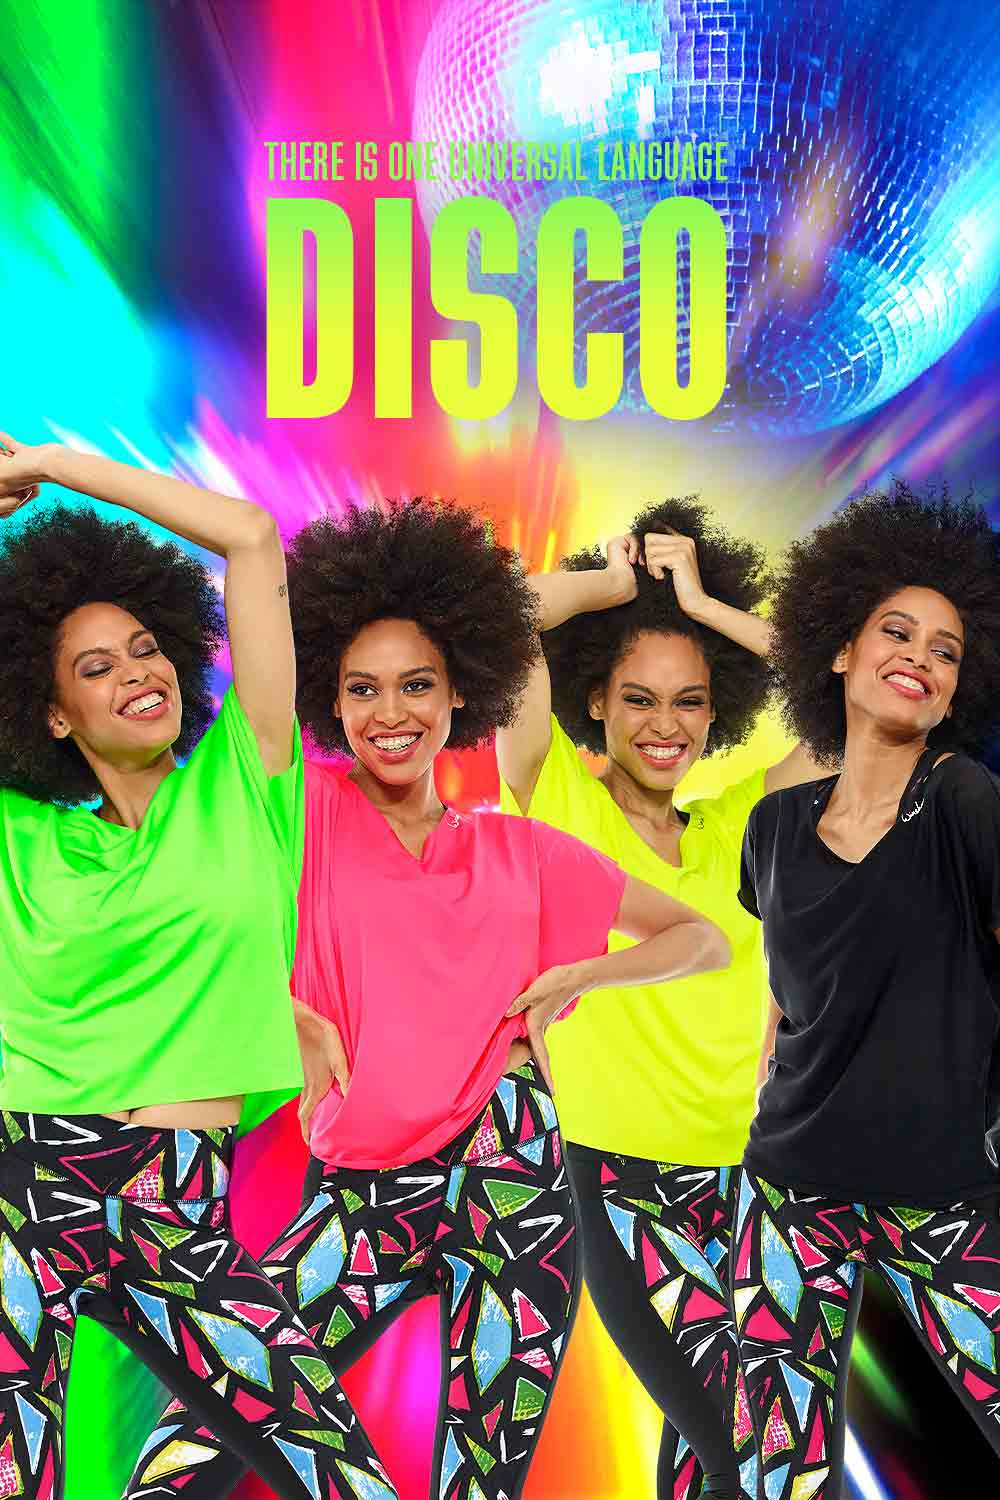 Lebensmittelgeschäft Functional Light Dance-Top DT101, neon gelb, Winshape Style Dance